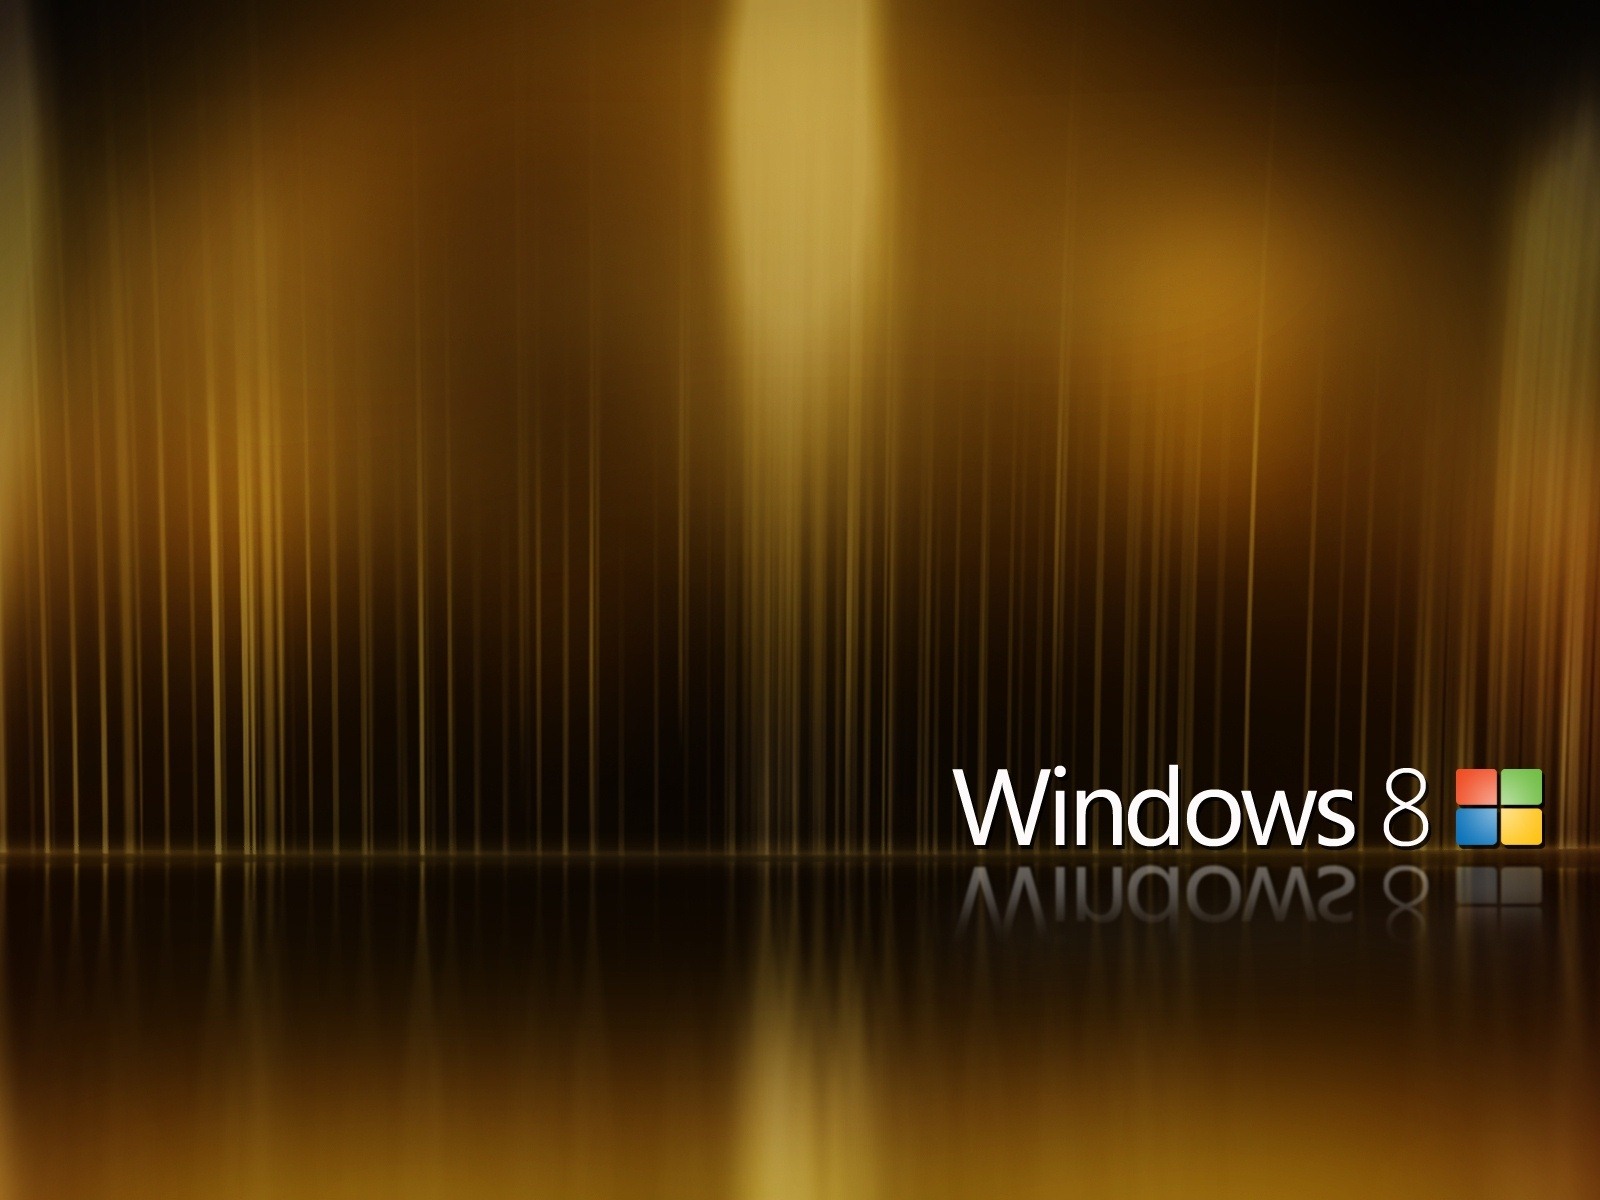 Fond d'écran Windows 8 Theme (2) #8 - 1600x1200